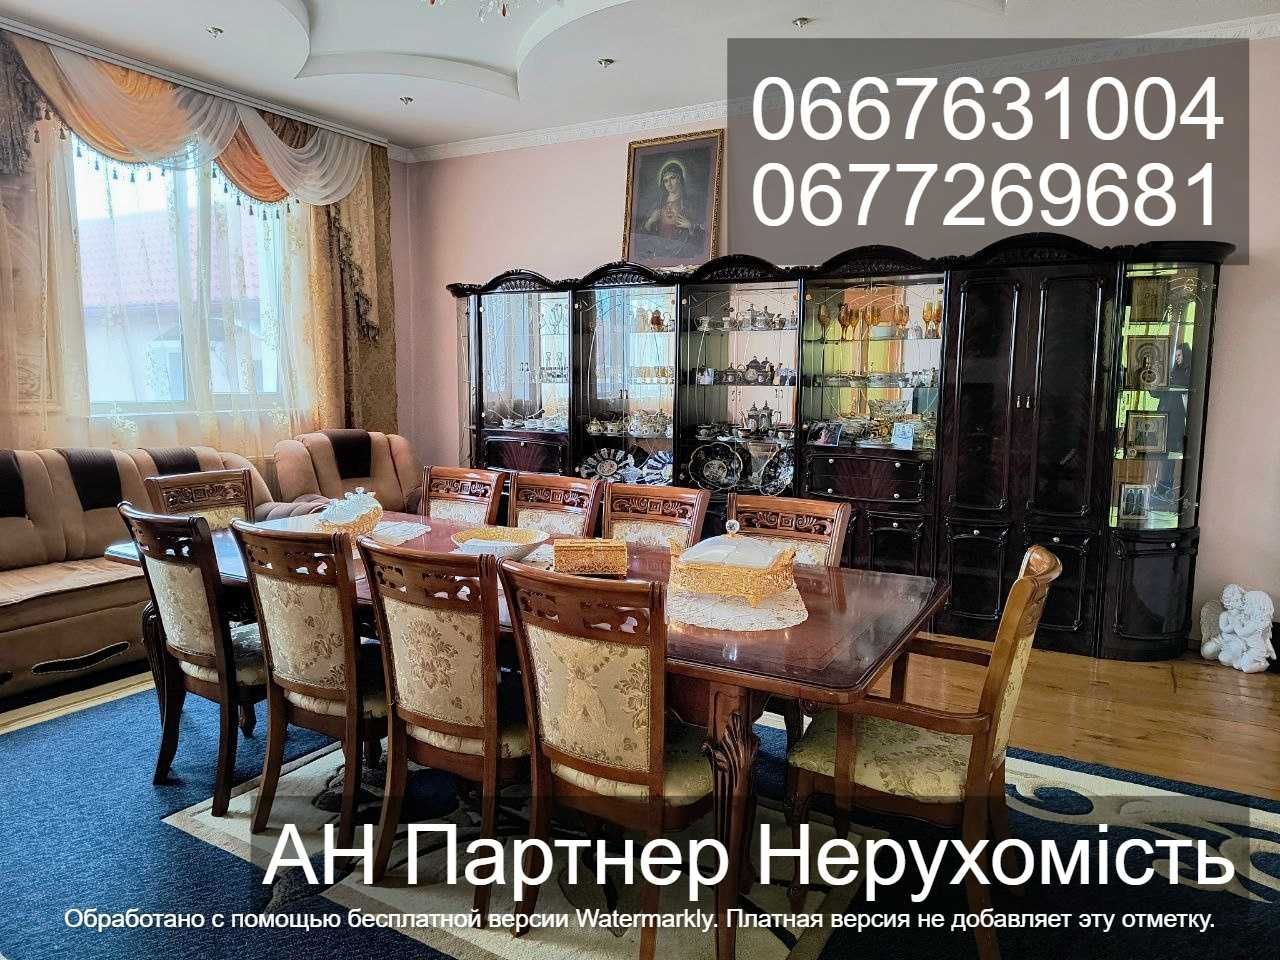 Одеса, вул. Степана Разіна, продам будинок з вигідною локацією.